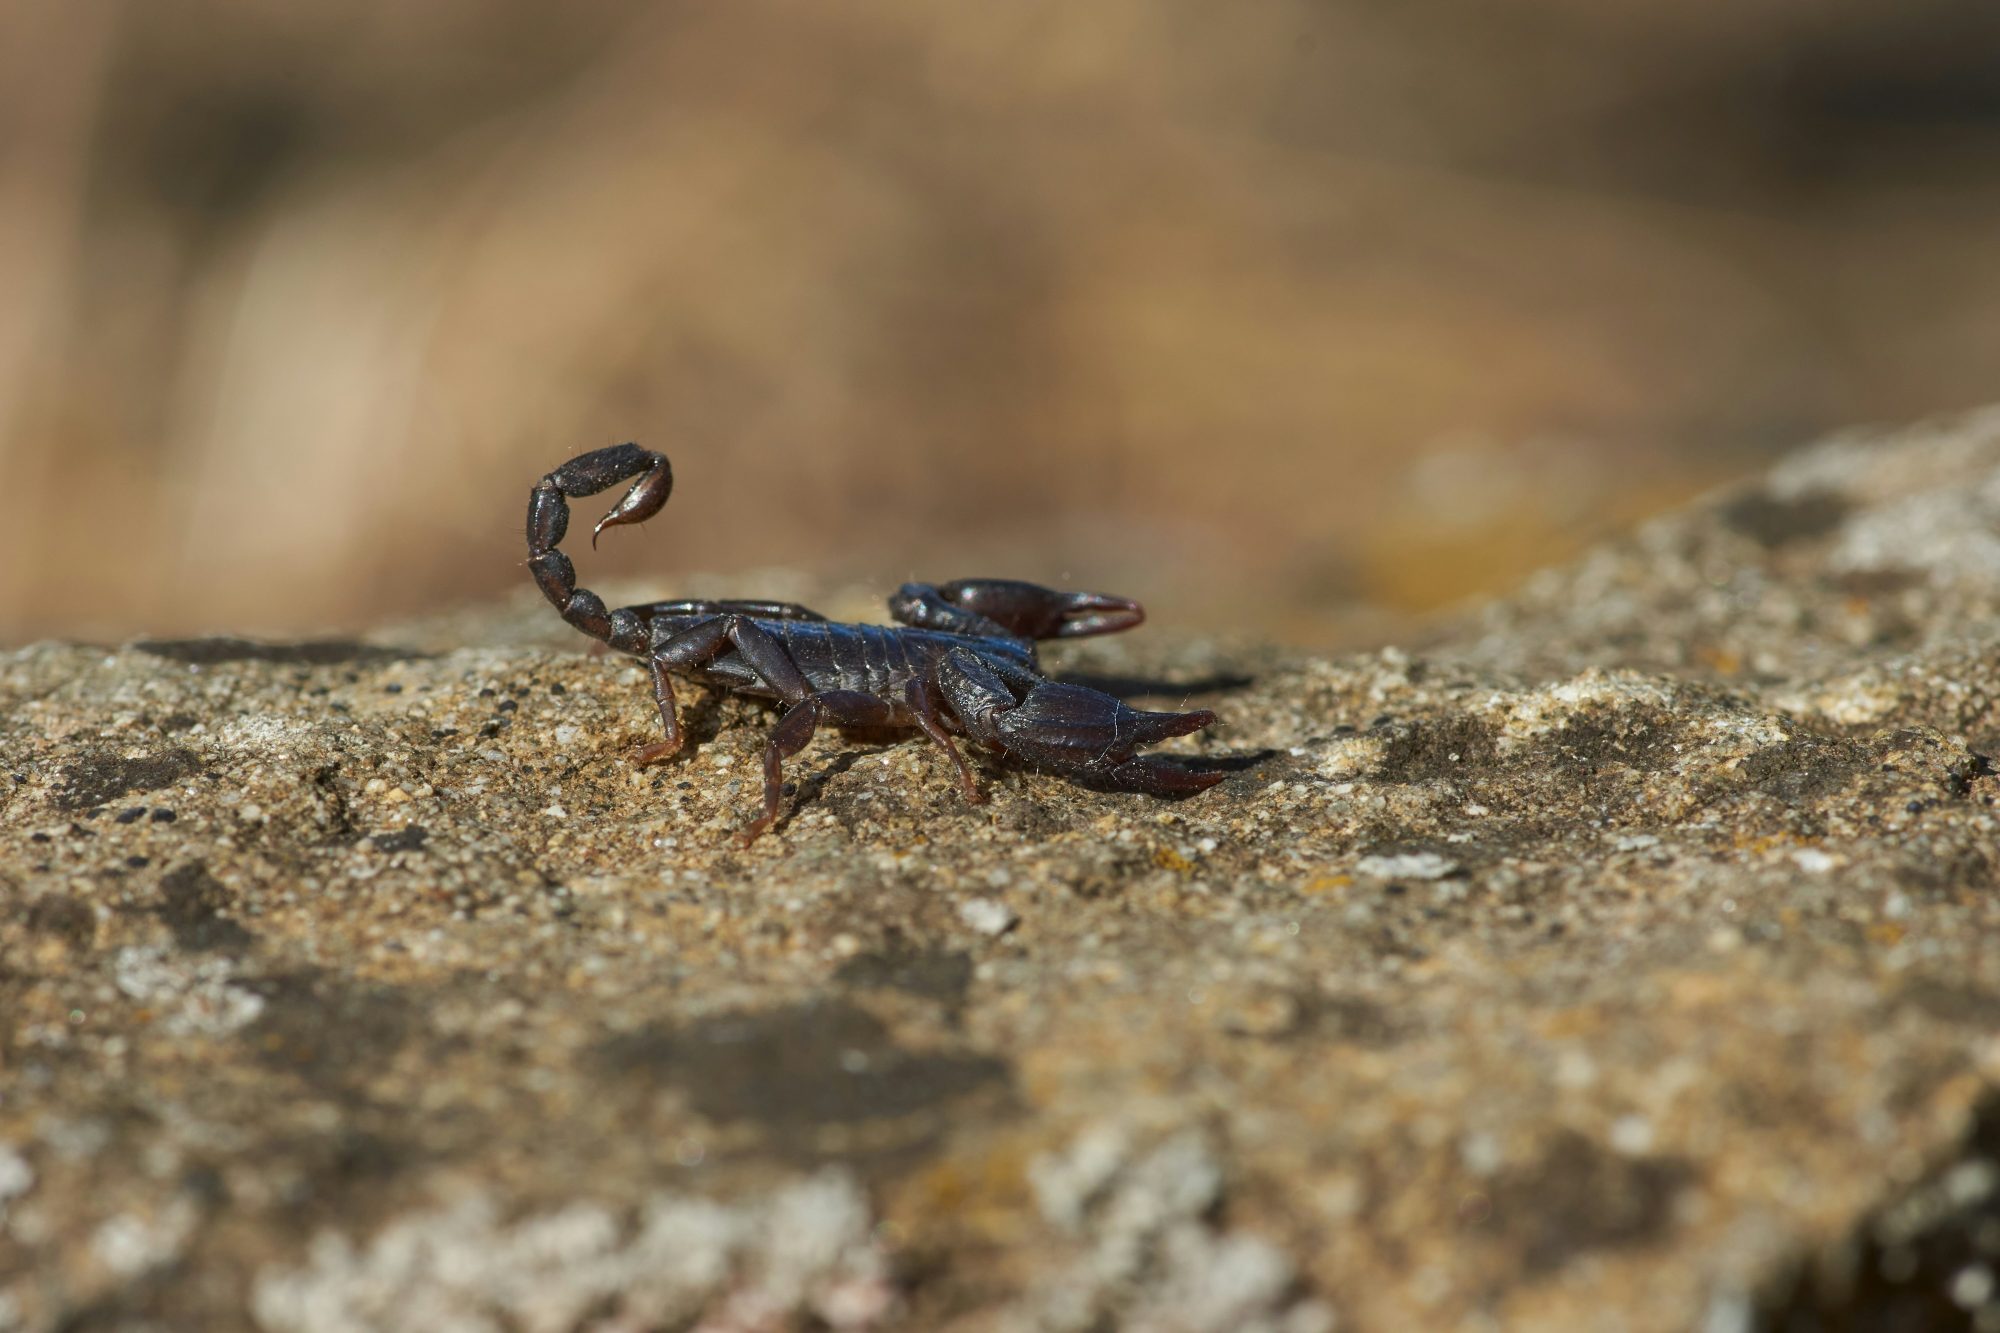 Scorpions are common winter Pests in Phoenix AZ